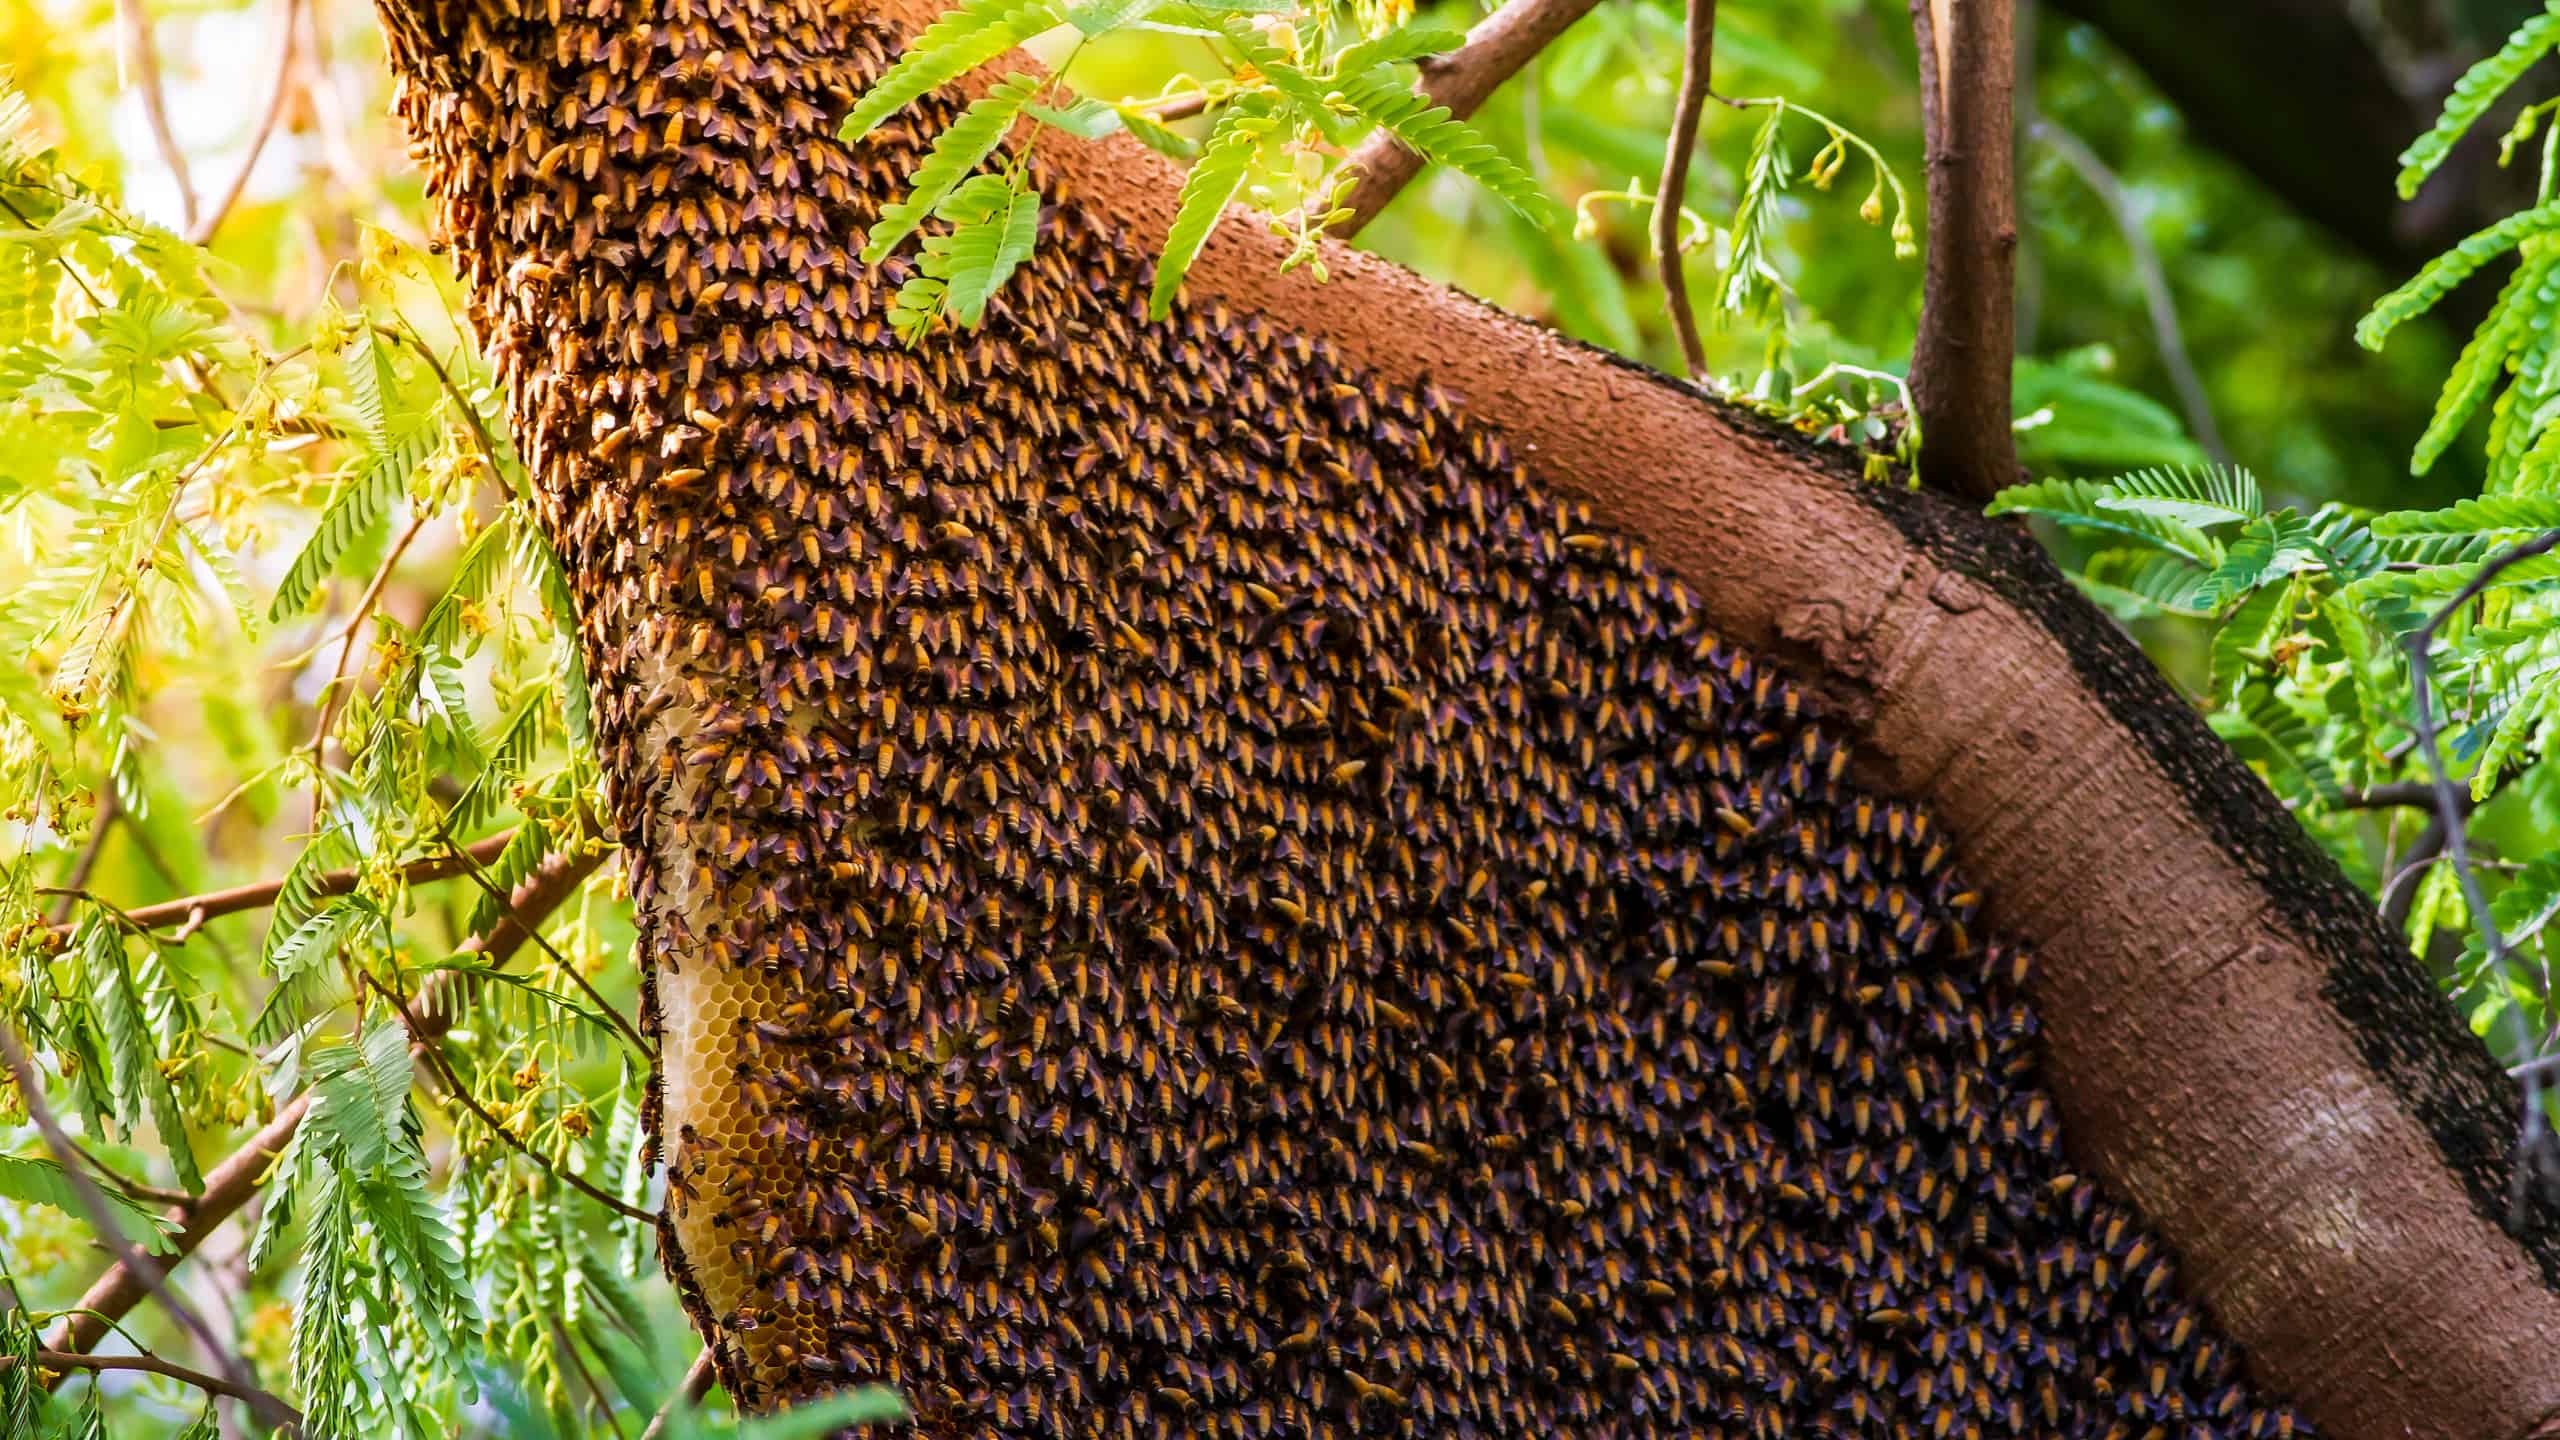 bee hive in tree inside